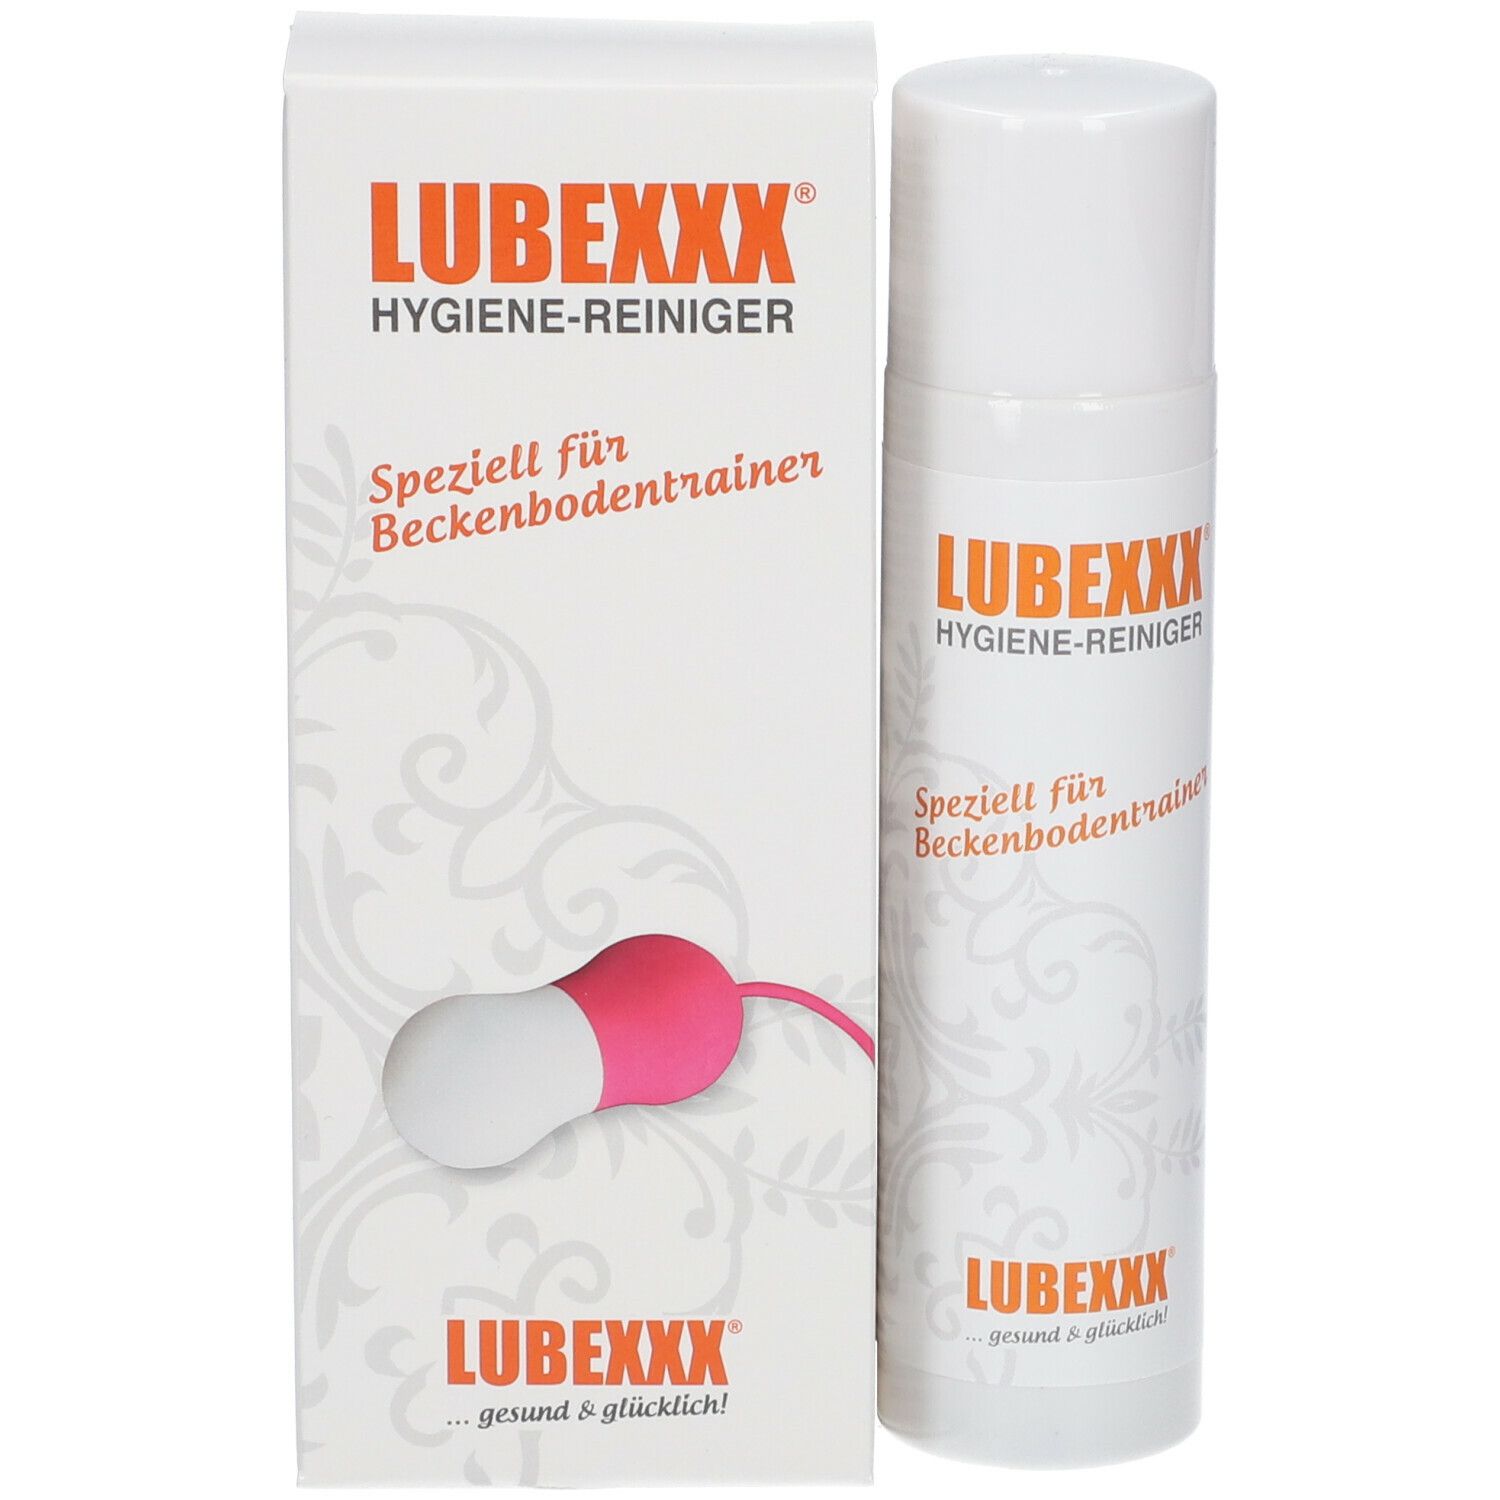 LUBEXXX® Hygiene Reiniger für Beckenbodentrainer